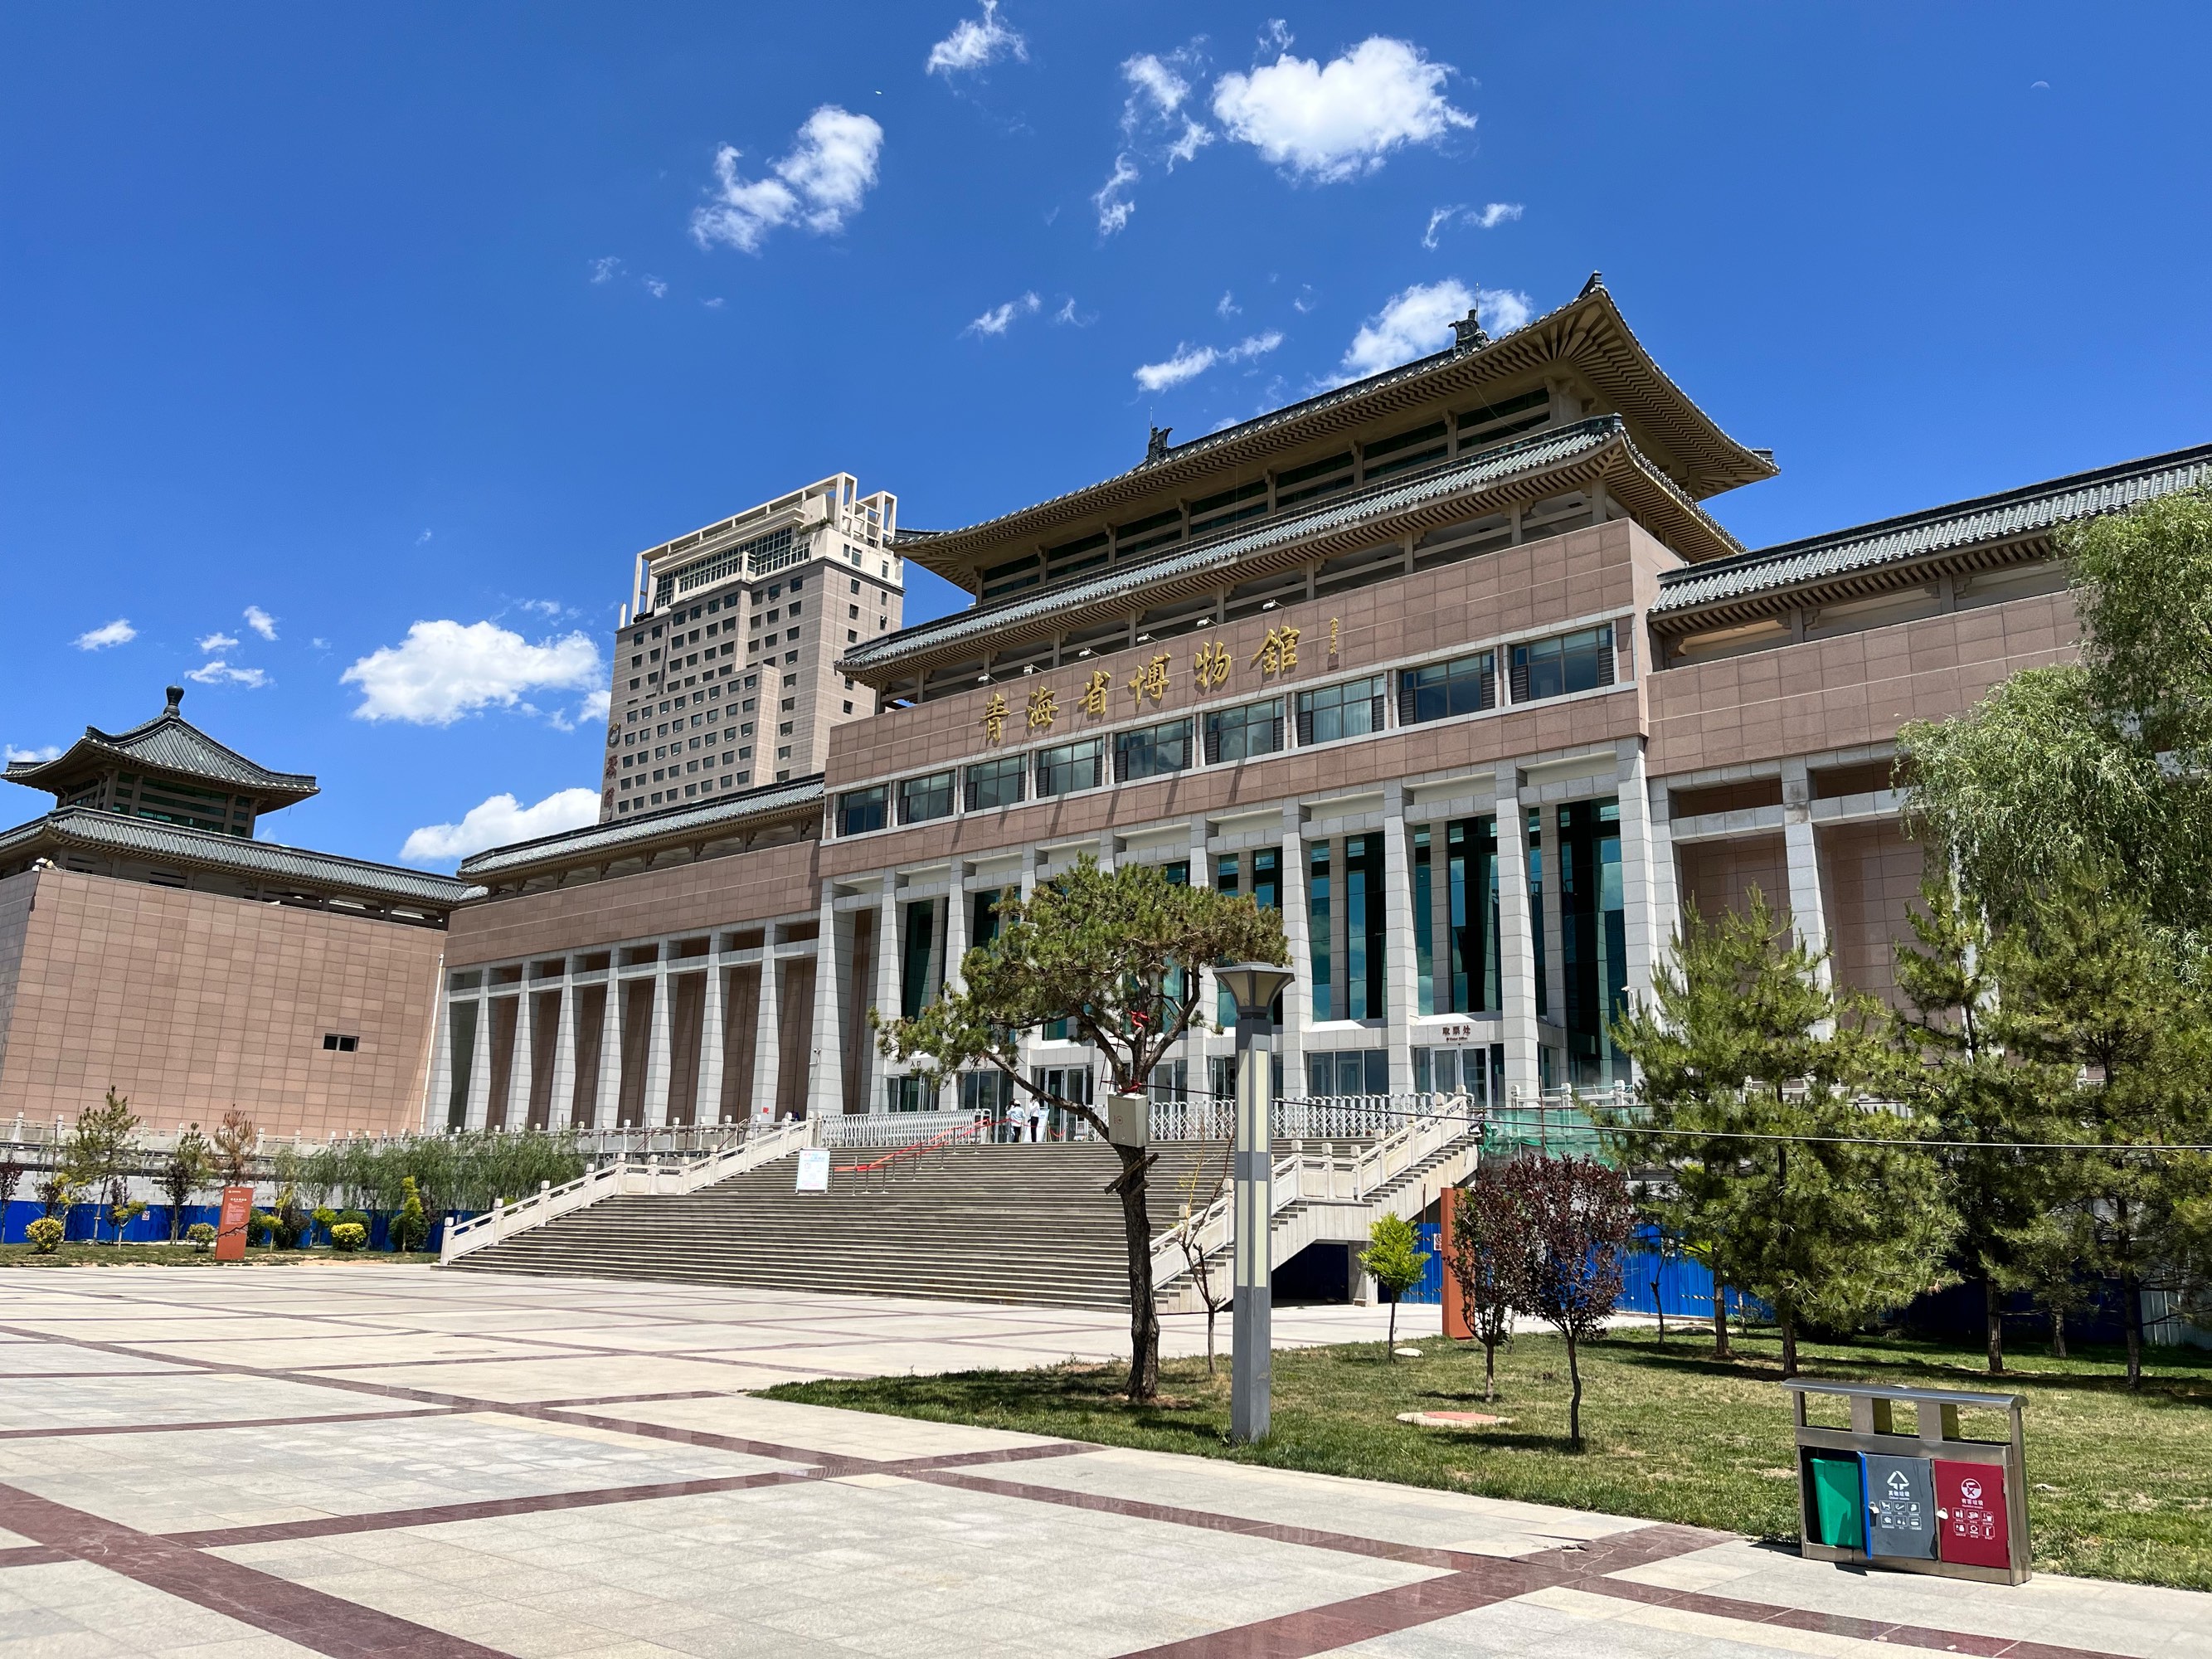 Qinghai Provincial Museum